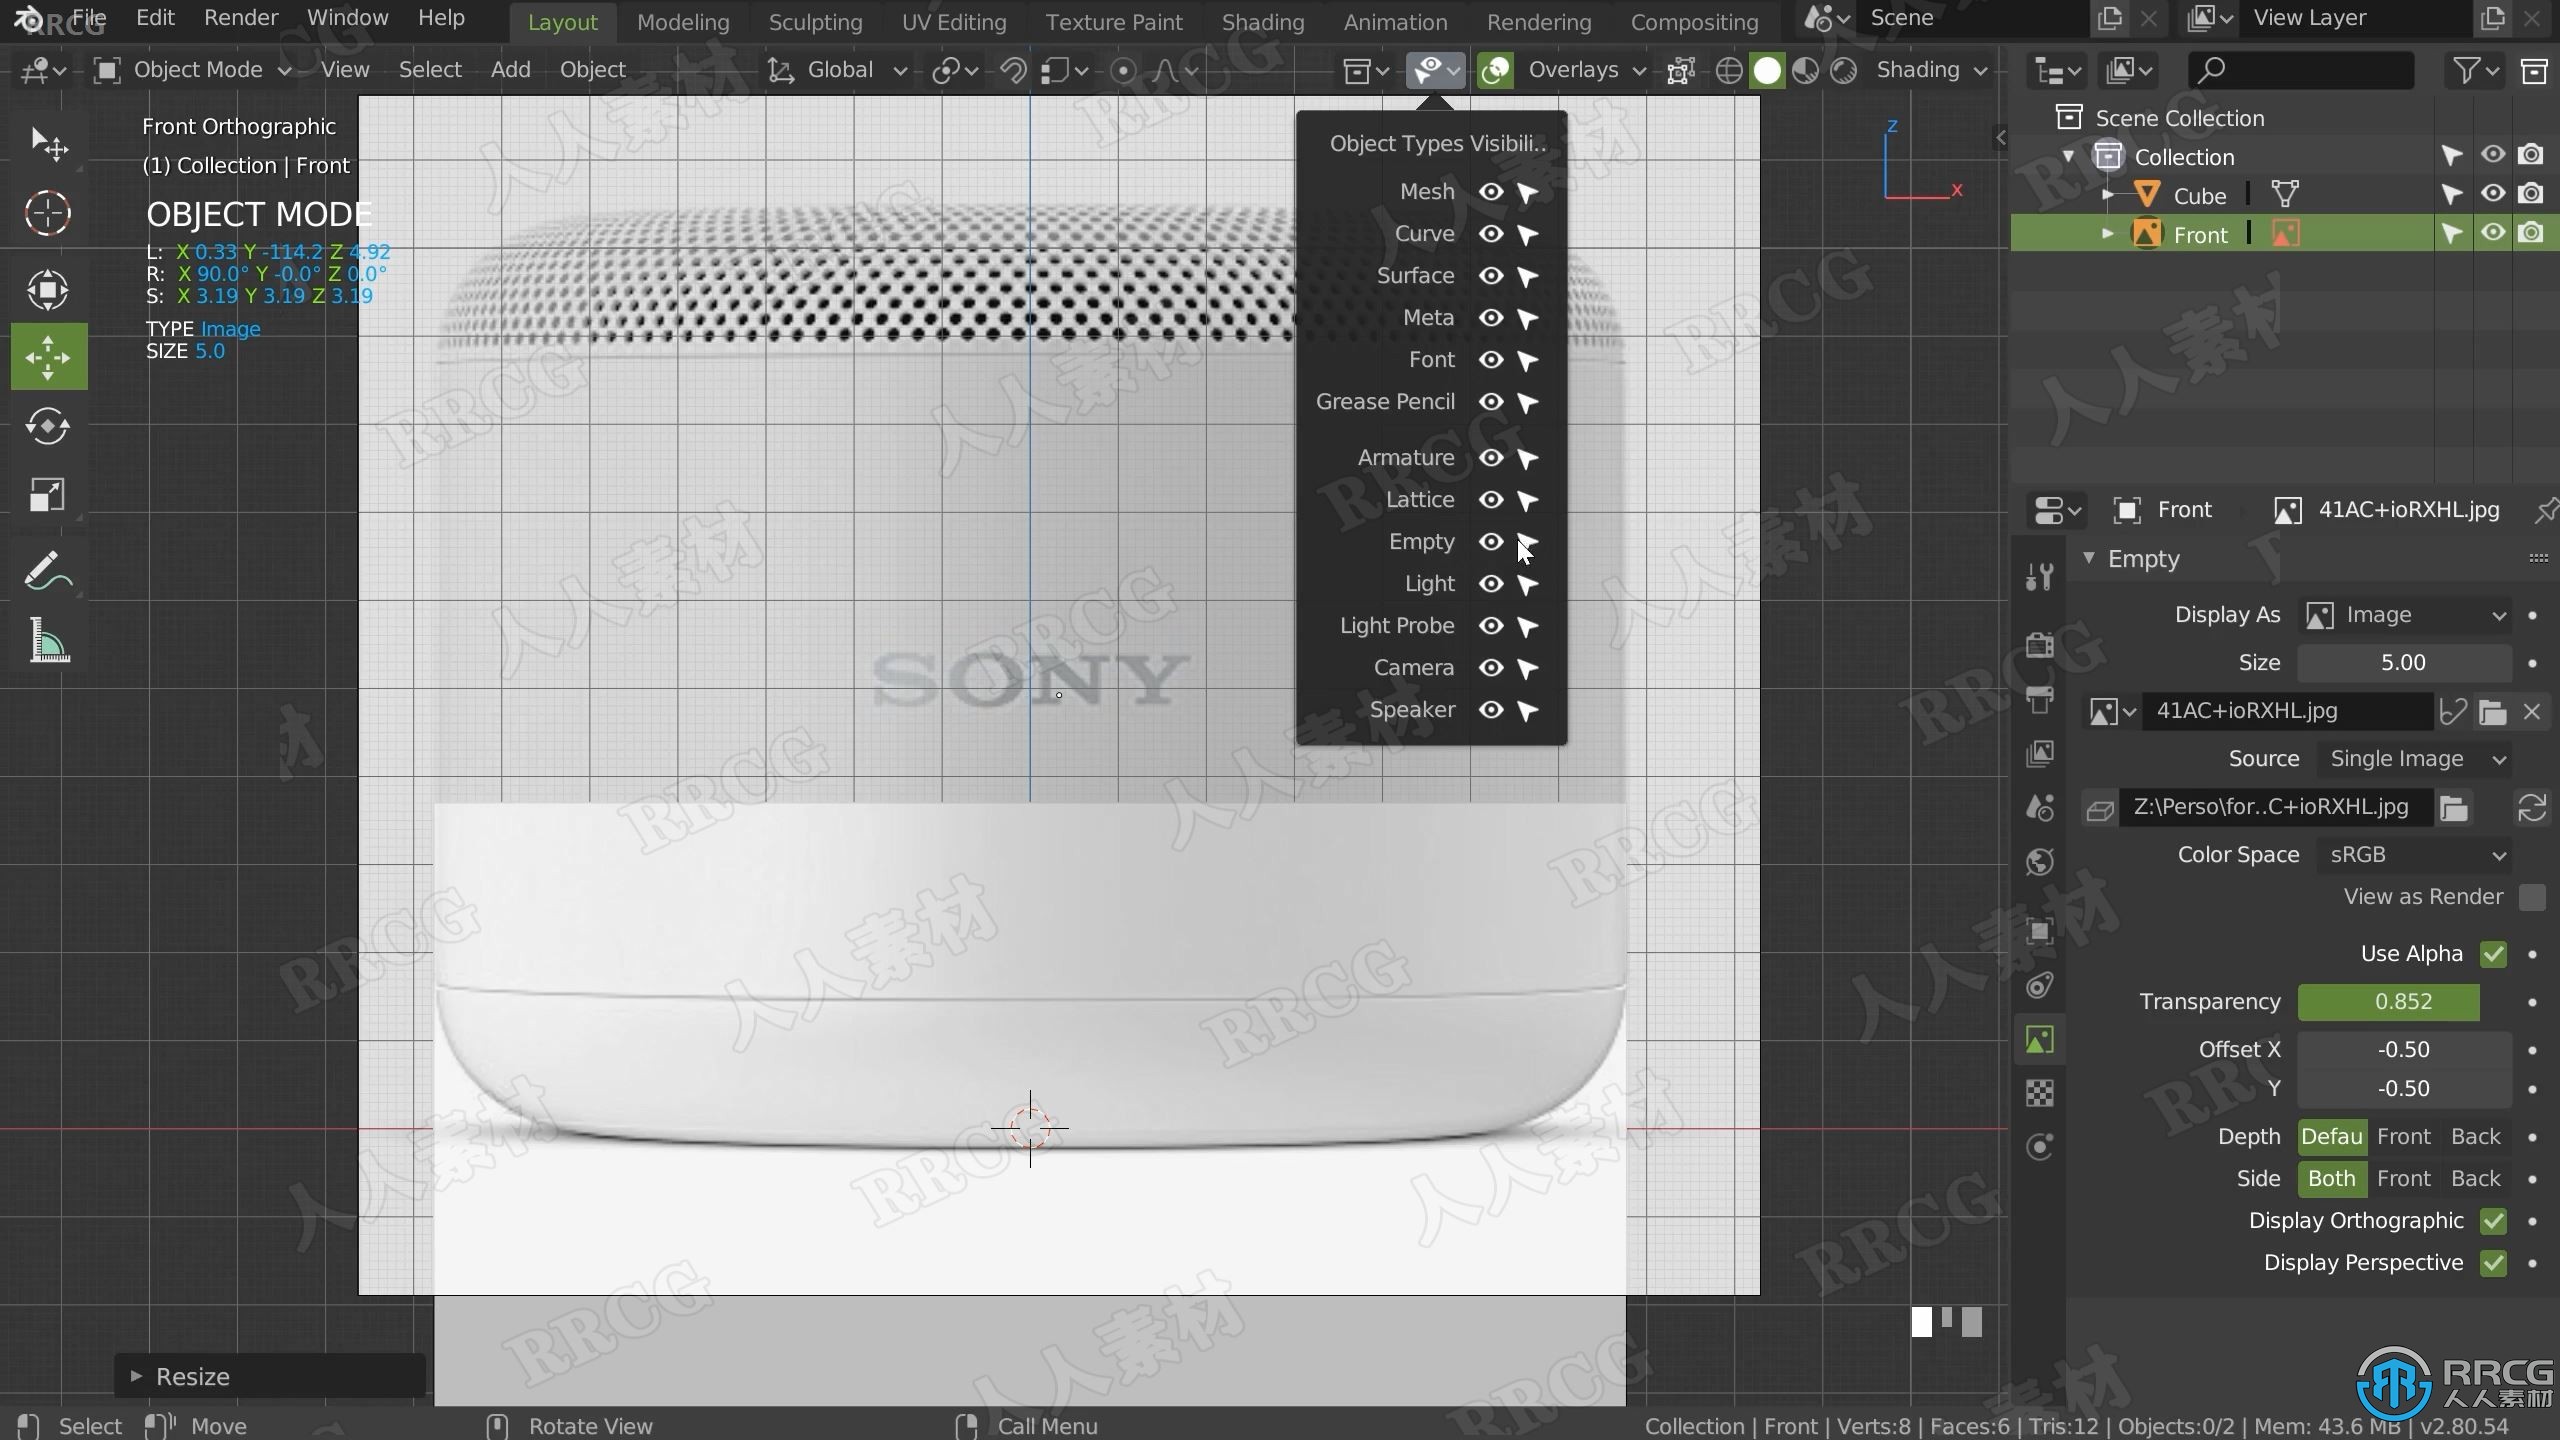 Blender索尼蓝牙音箱完整实例制作流程视频教程